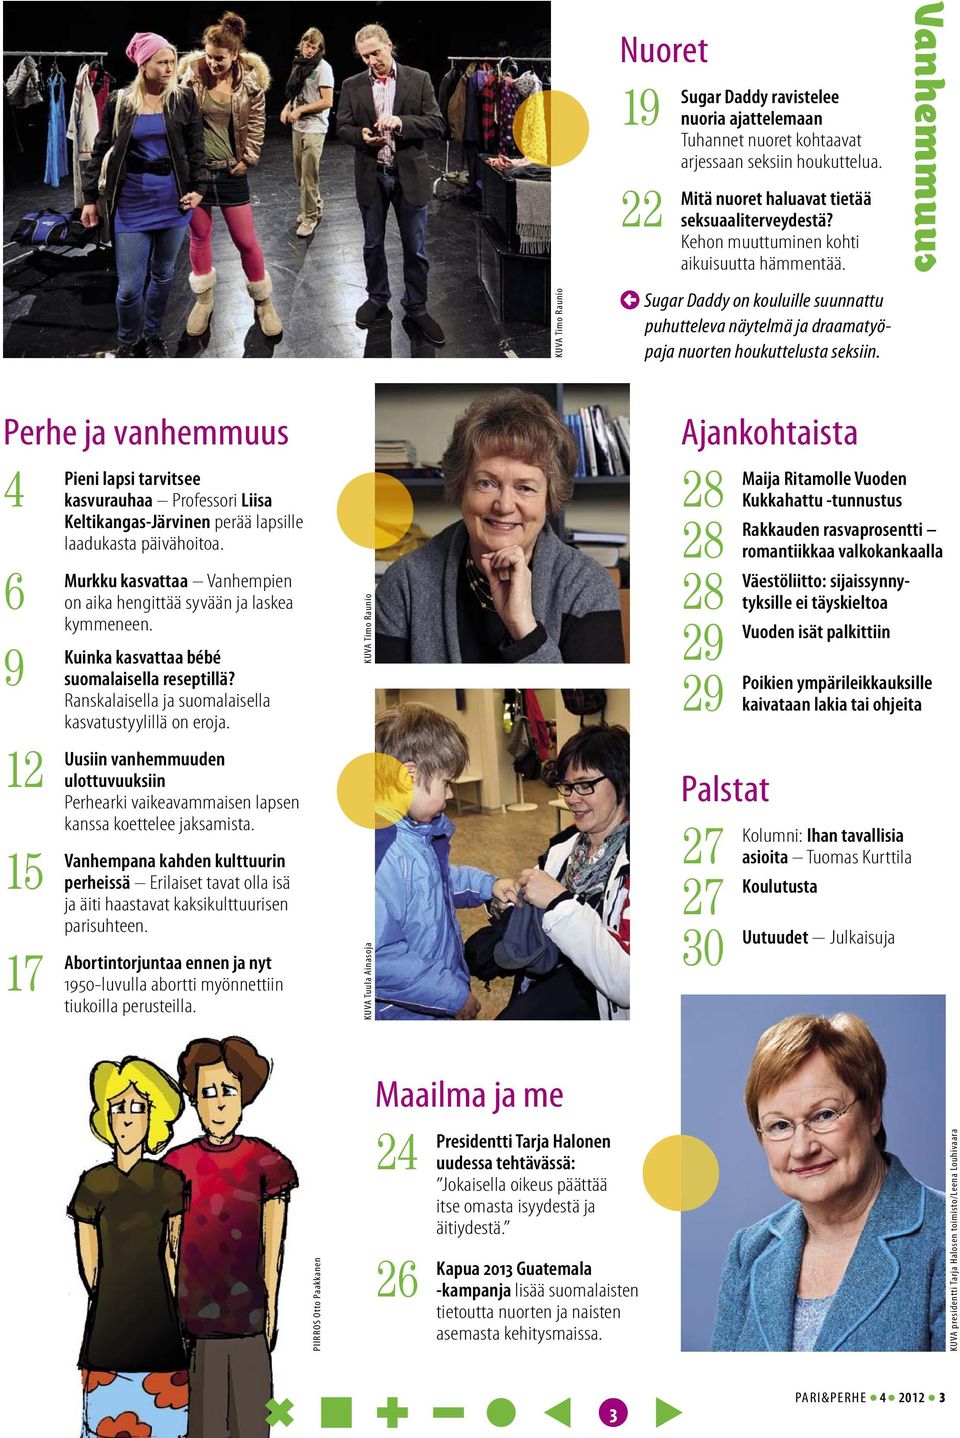 Vanhemmuus Perhe ja vanhemmuus 4 6 9 12 15 17 Pieni lapsi tarvitsee kasvurauhaa Professori Liisa Keltikangas-Järvinen perää lapsille laadukasta päivähoitoa.